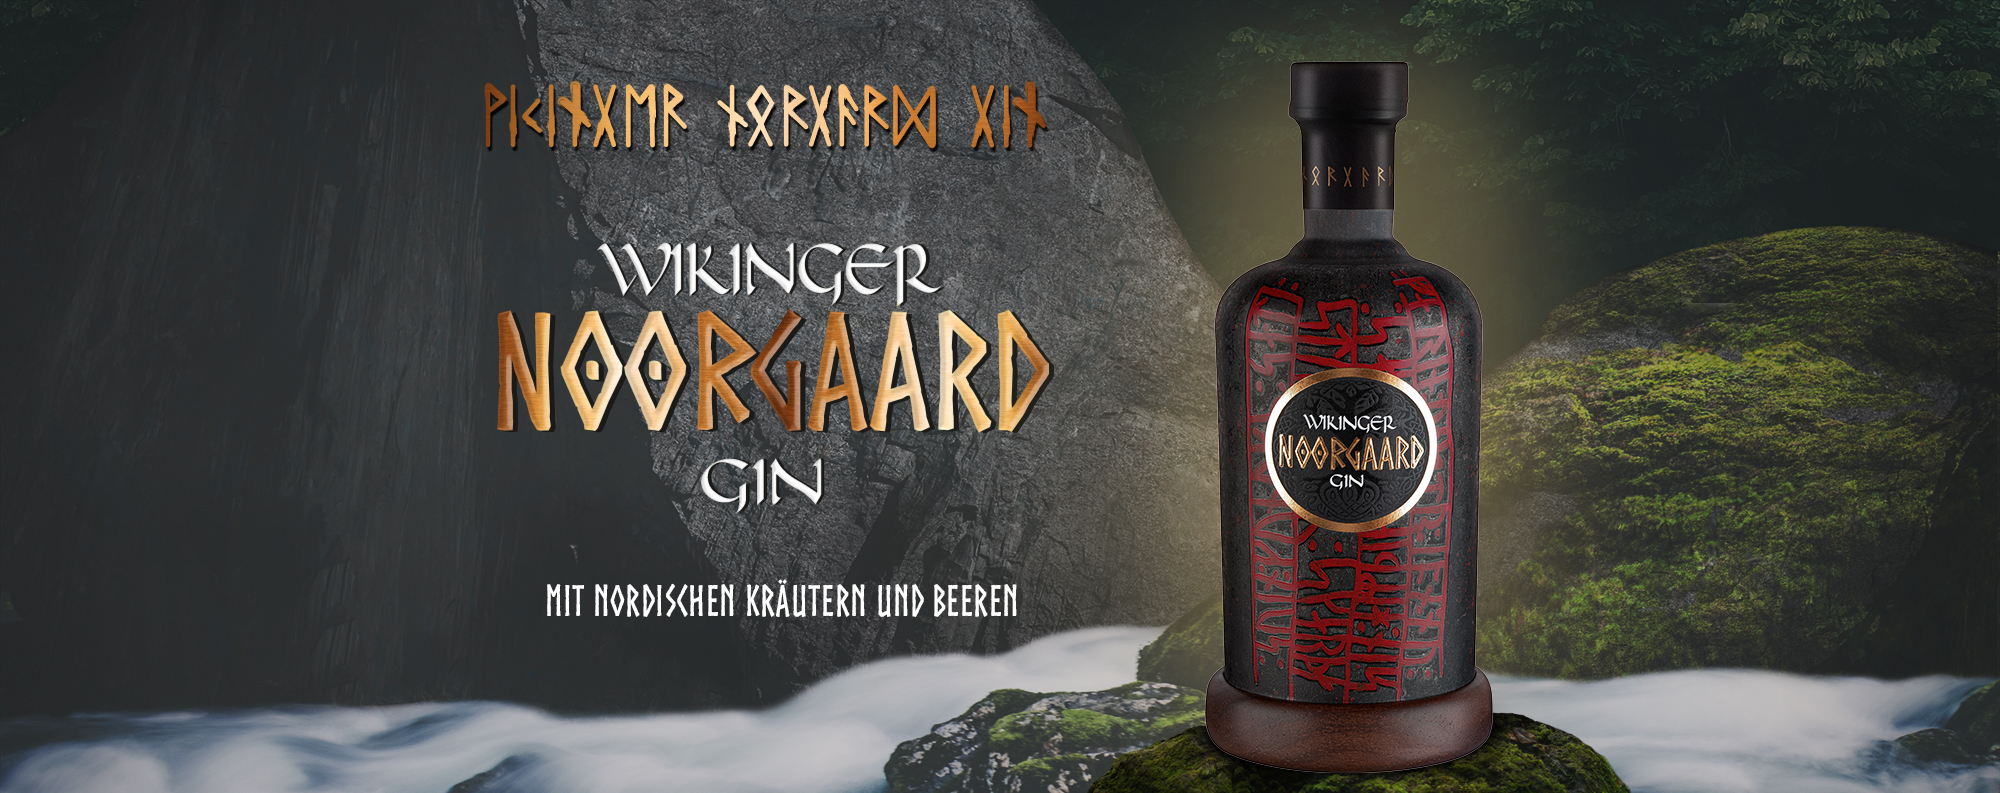 WIKINGER NOORGAARD Gin 43,9% vol. mit nordischen Kräutern und Beeren hier  online bestellen. | Behnshop